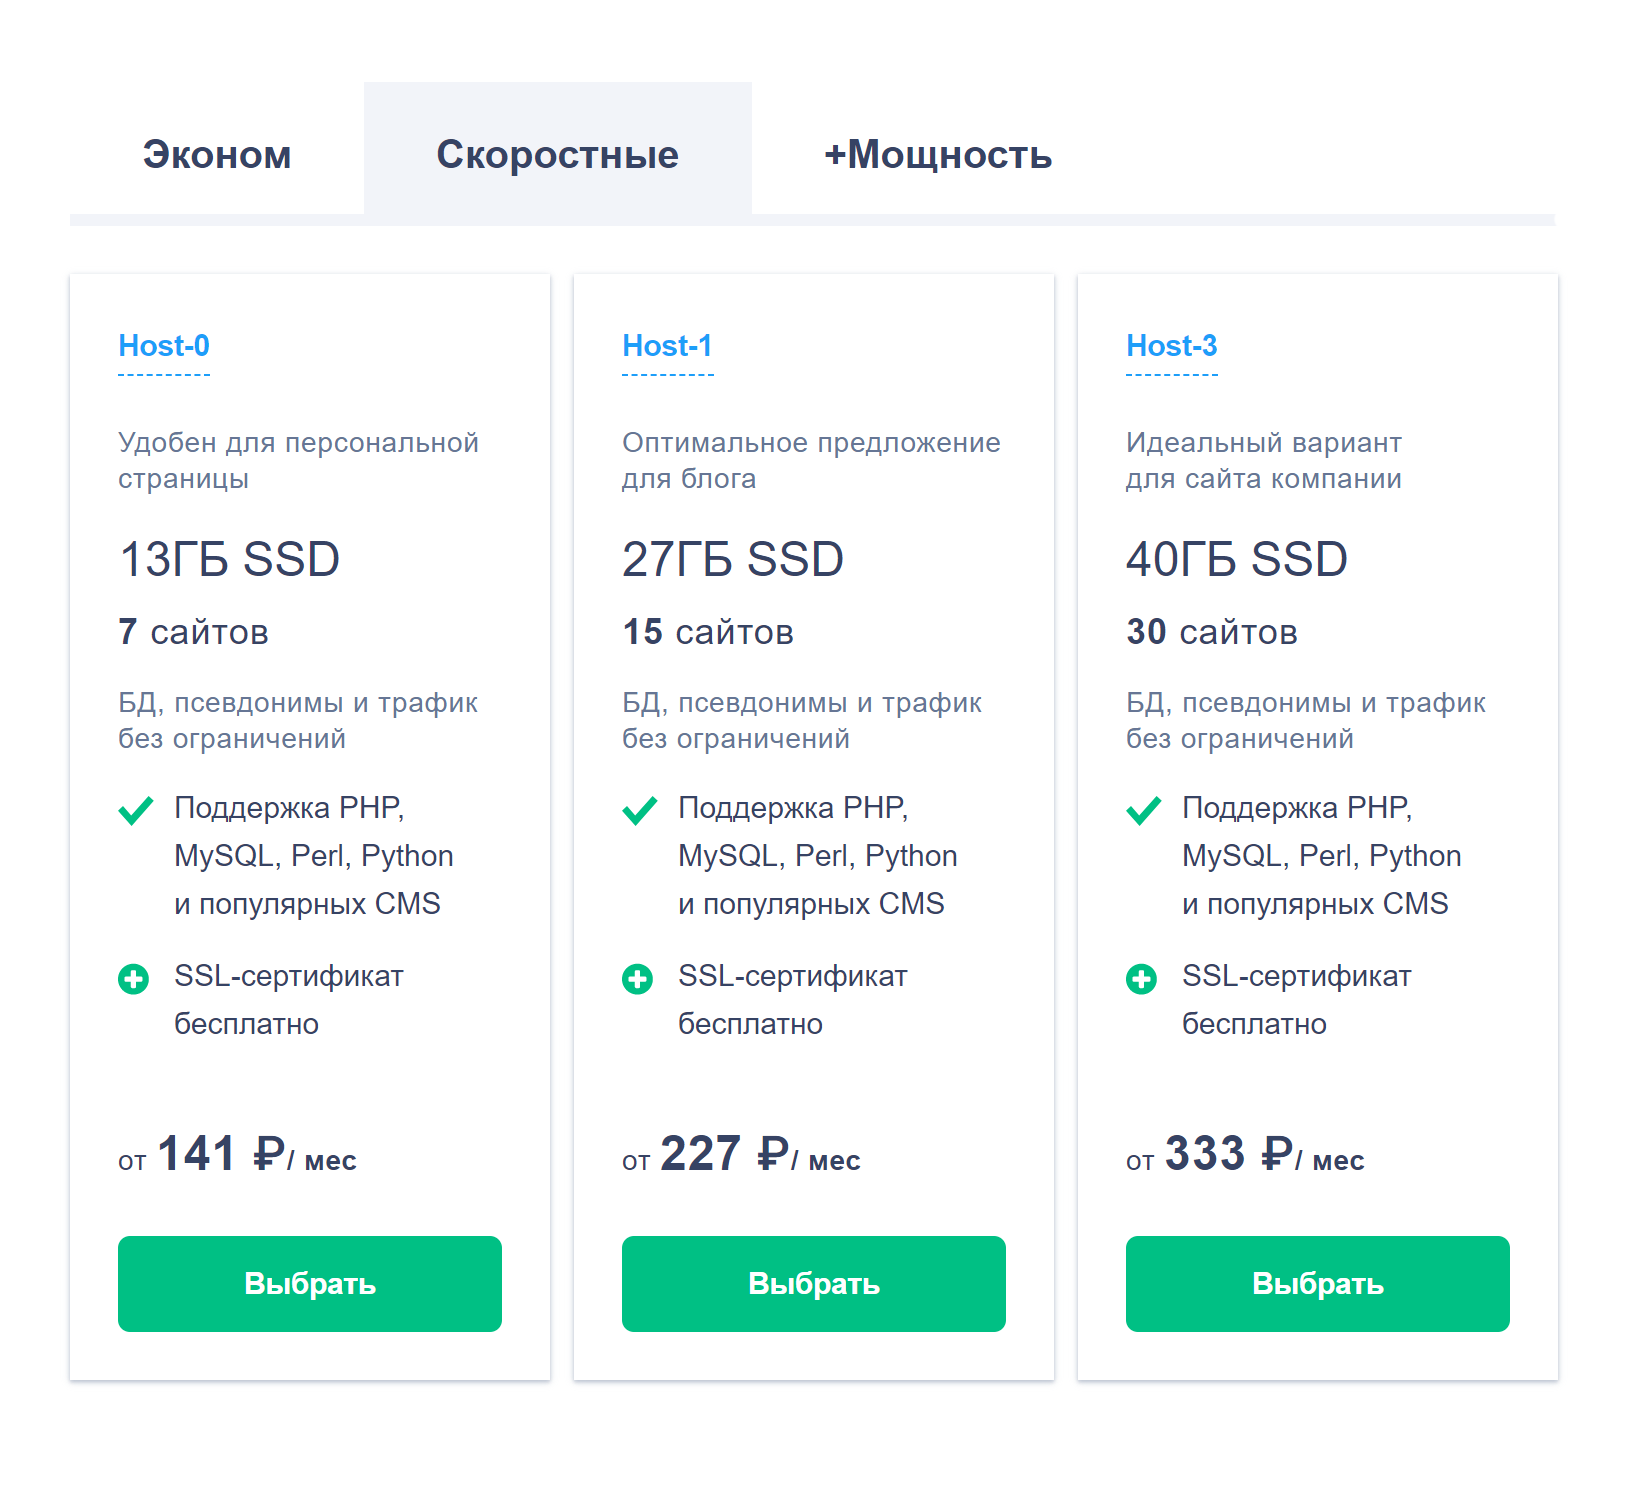 На сайте reg.ru стоимость услуг зависит от размера дискового пространства, количества сайтов, которое можно разместить на хостинге, поддержки CMS и других параметров. На самом дешевом тарифе CMS не поддерживается, так что он бы мне не подошел